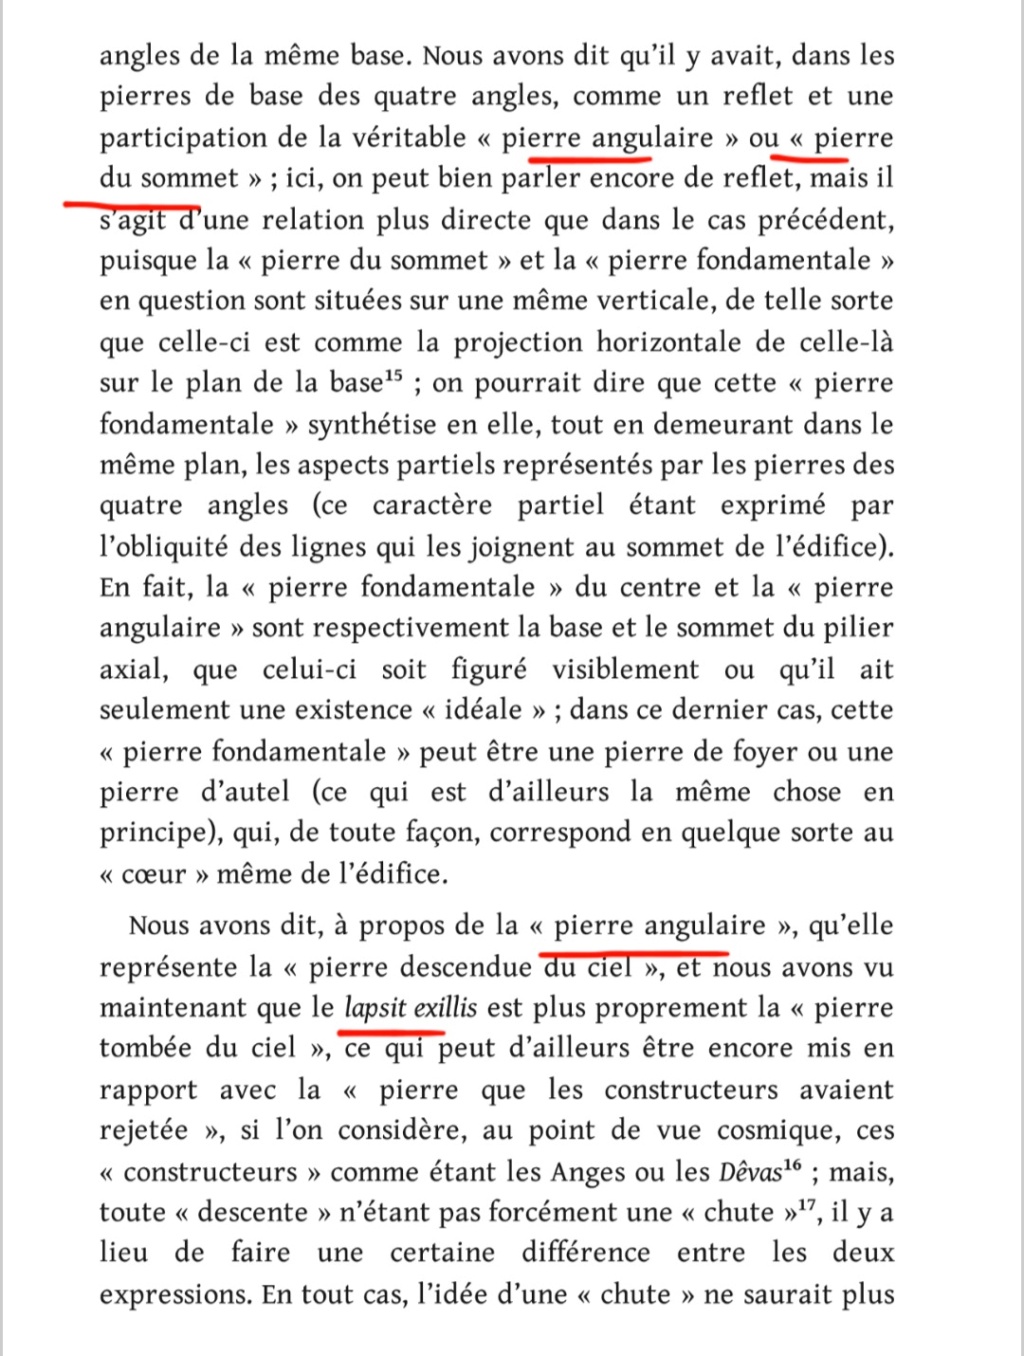 La franc-maçonnerie, la Gnose et le gnosticisme.  - Page 5 Scree535